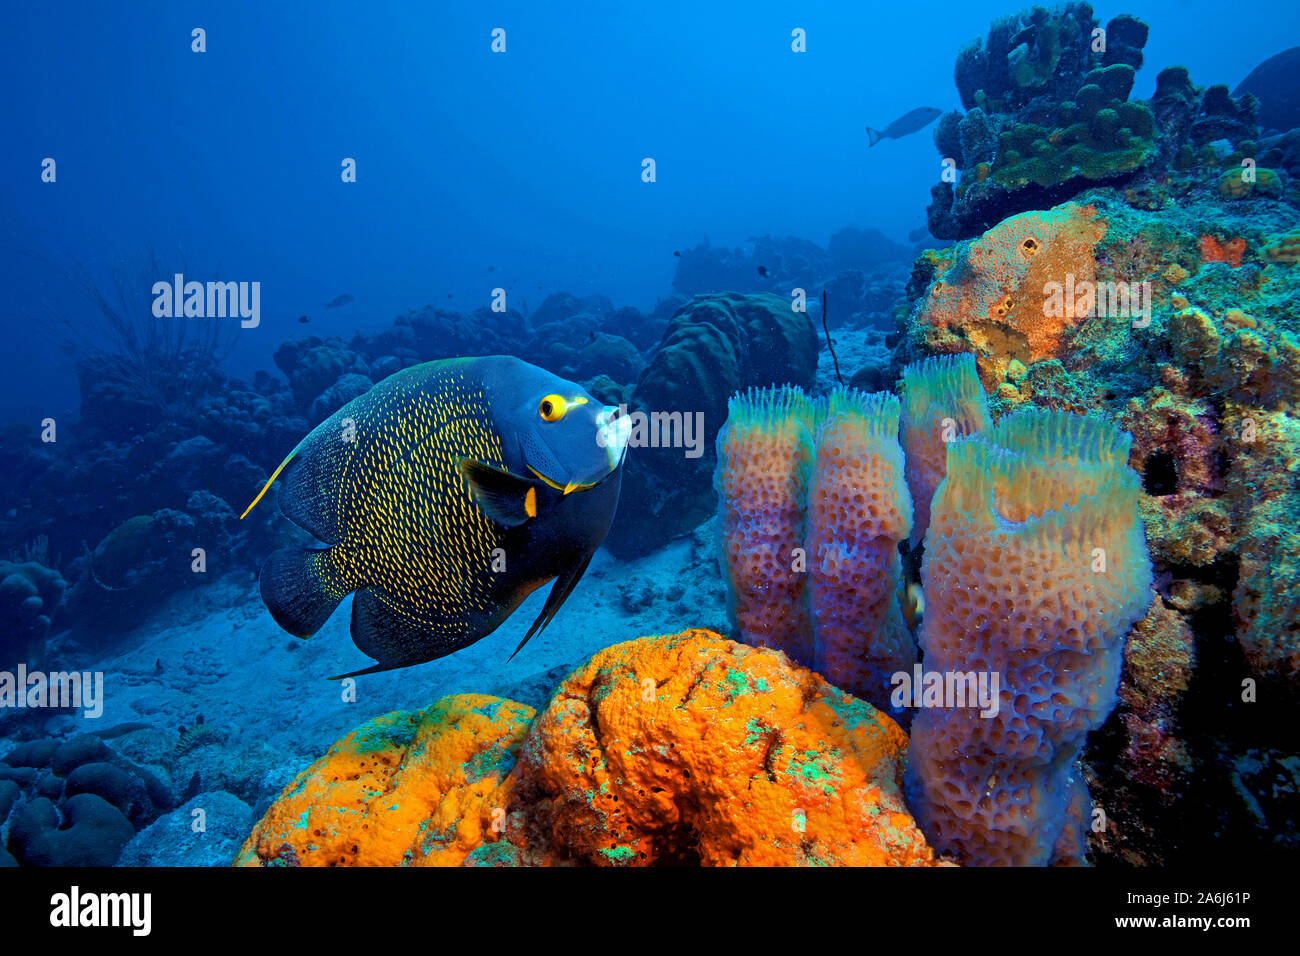 Französische kaiserfisch (Pomacanthus bedächtig) in einem karibischen Korallenriffs, Azure vase Schwamm (Callyspongia plicifera), Elephant ear Schwamm (Agelas clathrodes) Stockfoto